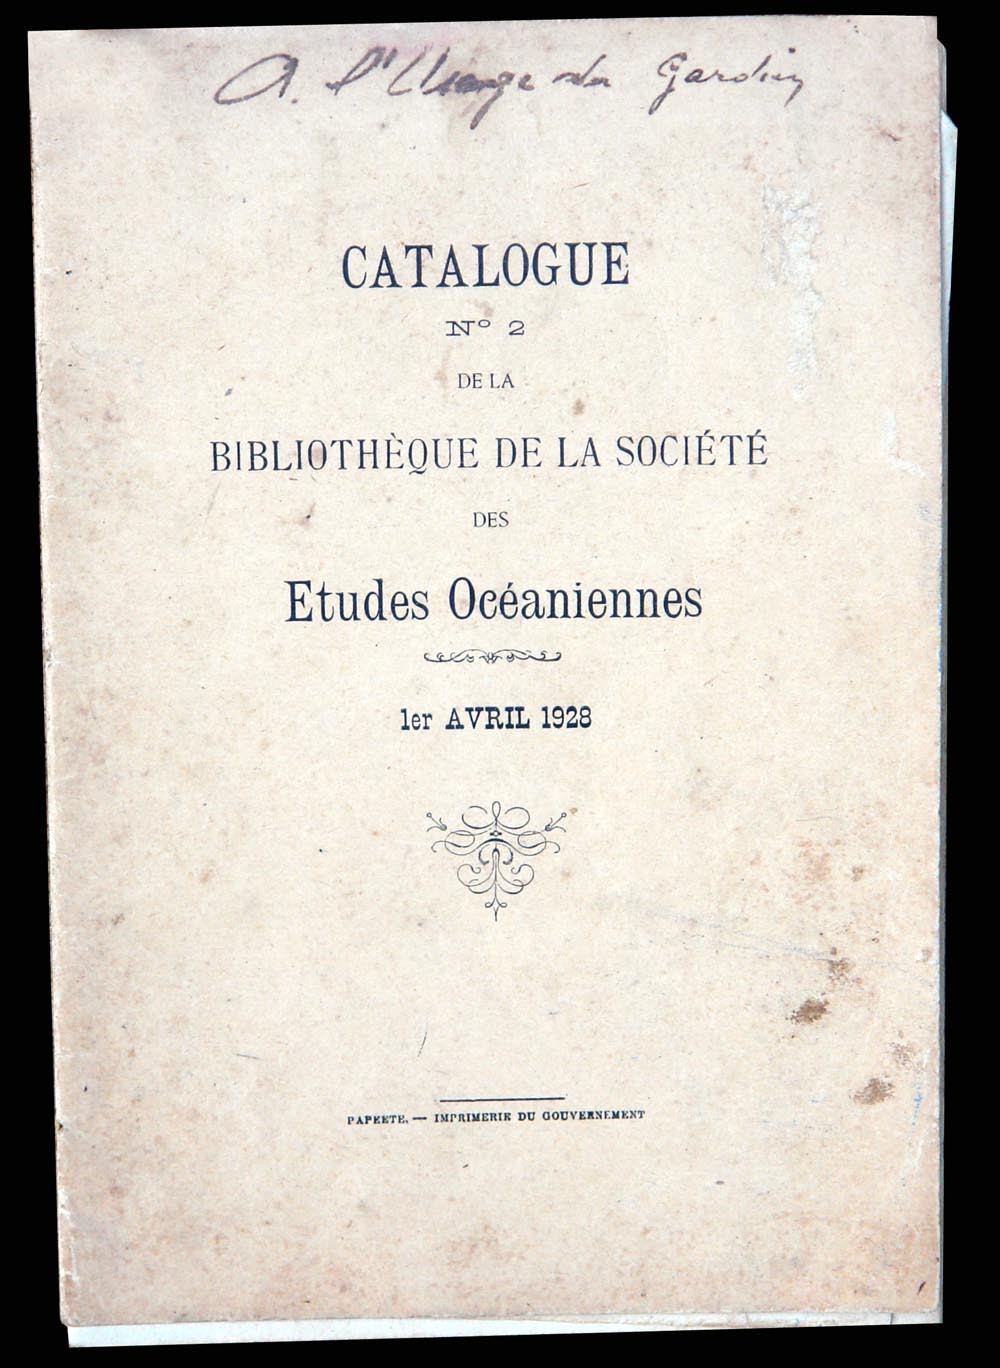 Extraits du catalogue N°2 de la Bibliothèque de la Société des Etudes Océaniennes (1928)